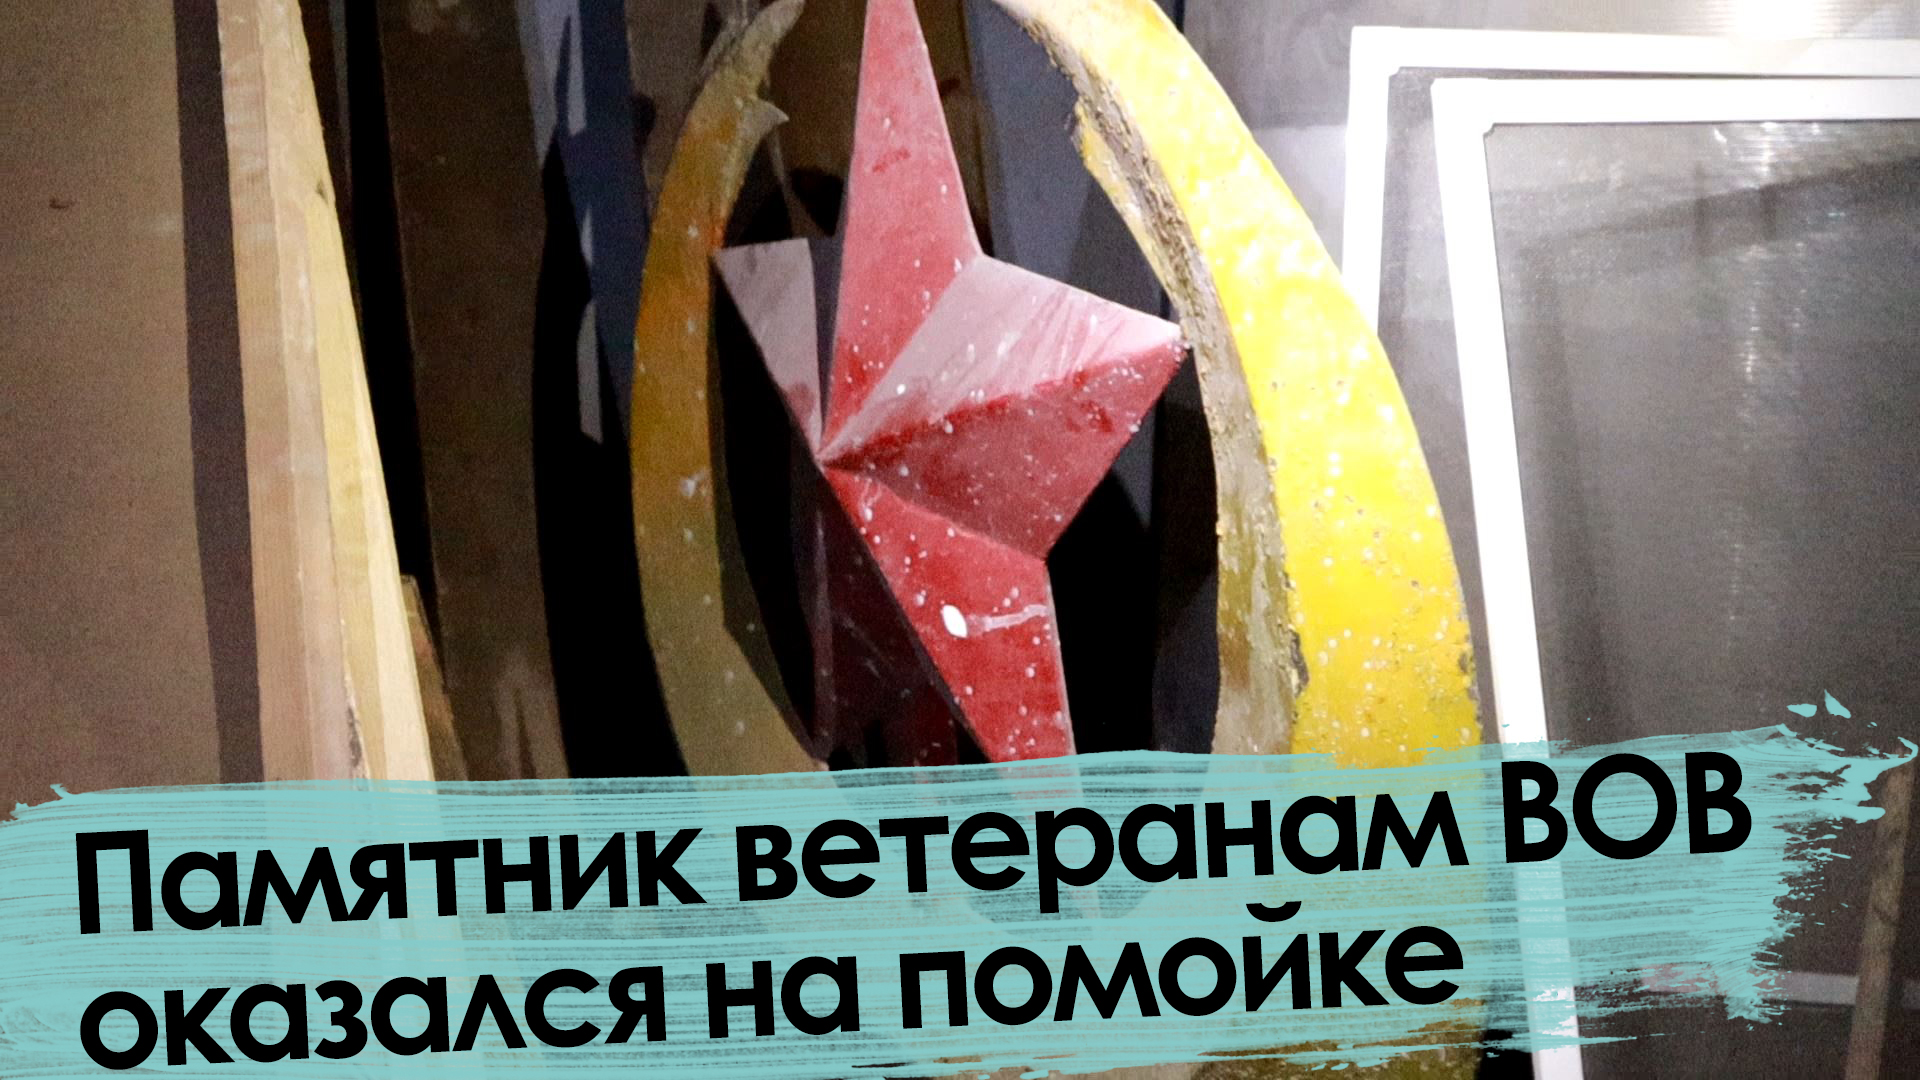 Не Украина: в Забайкалье снесли памятник ветеранам Великой Победы